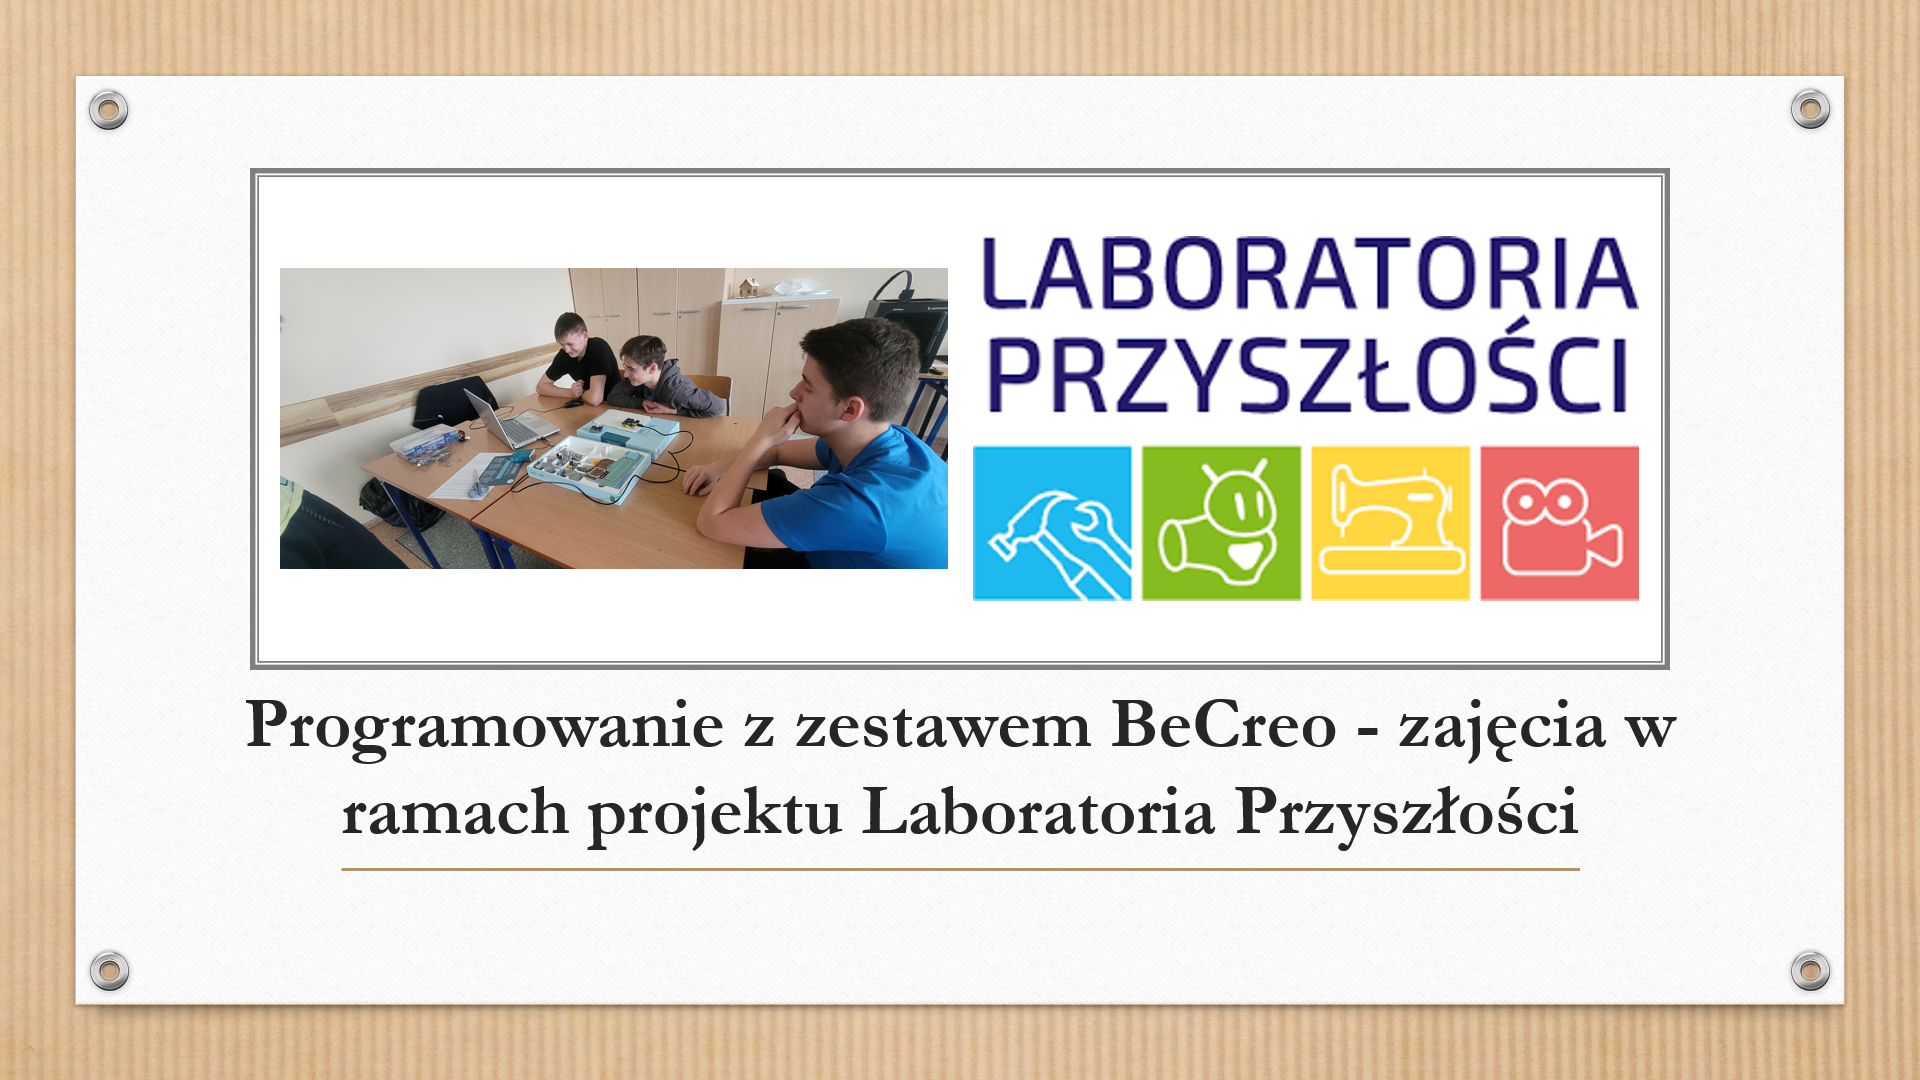 Programowanie z zestawem BeCreo - zajęcia w ramach projektu Laboratoria Przyszłości.